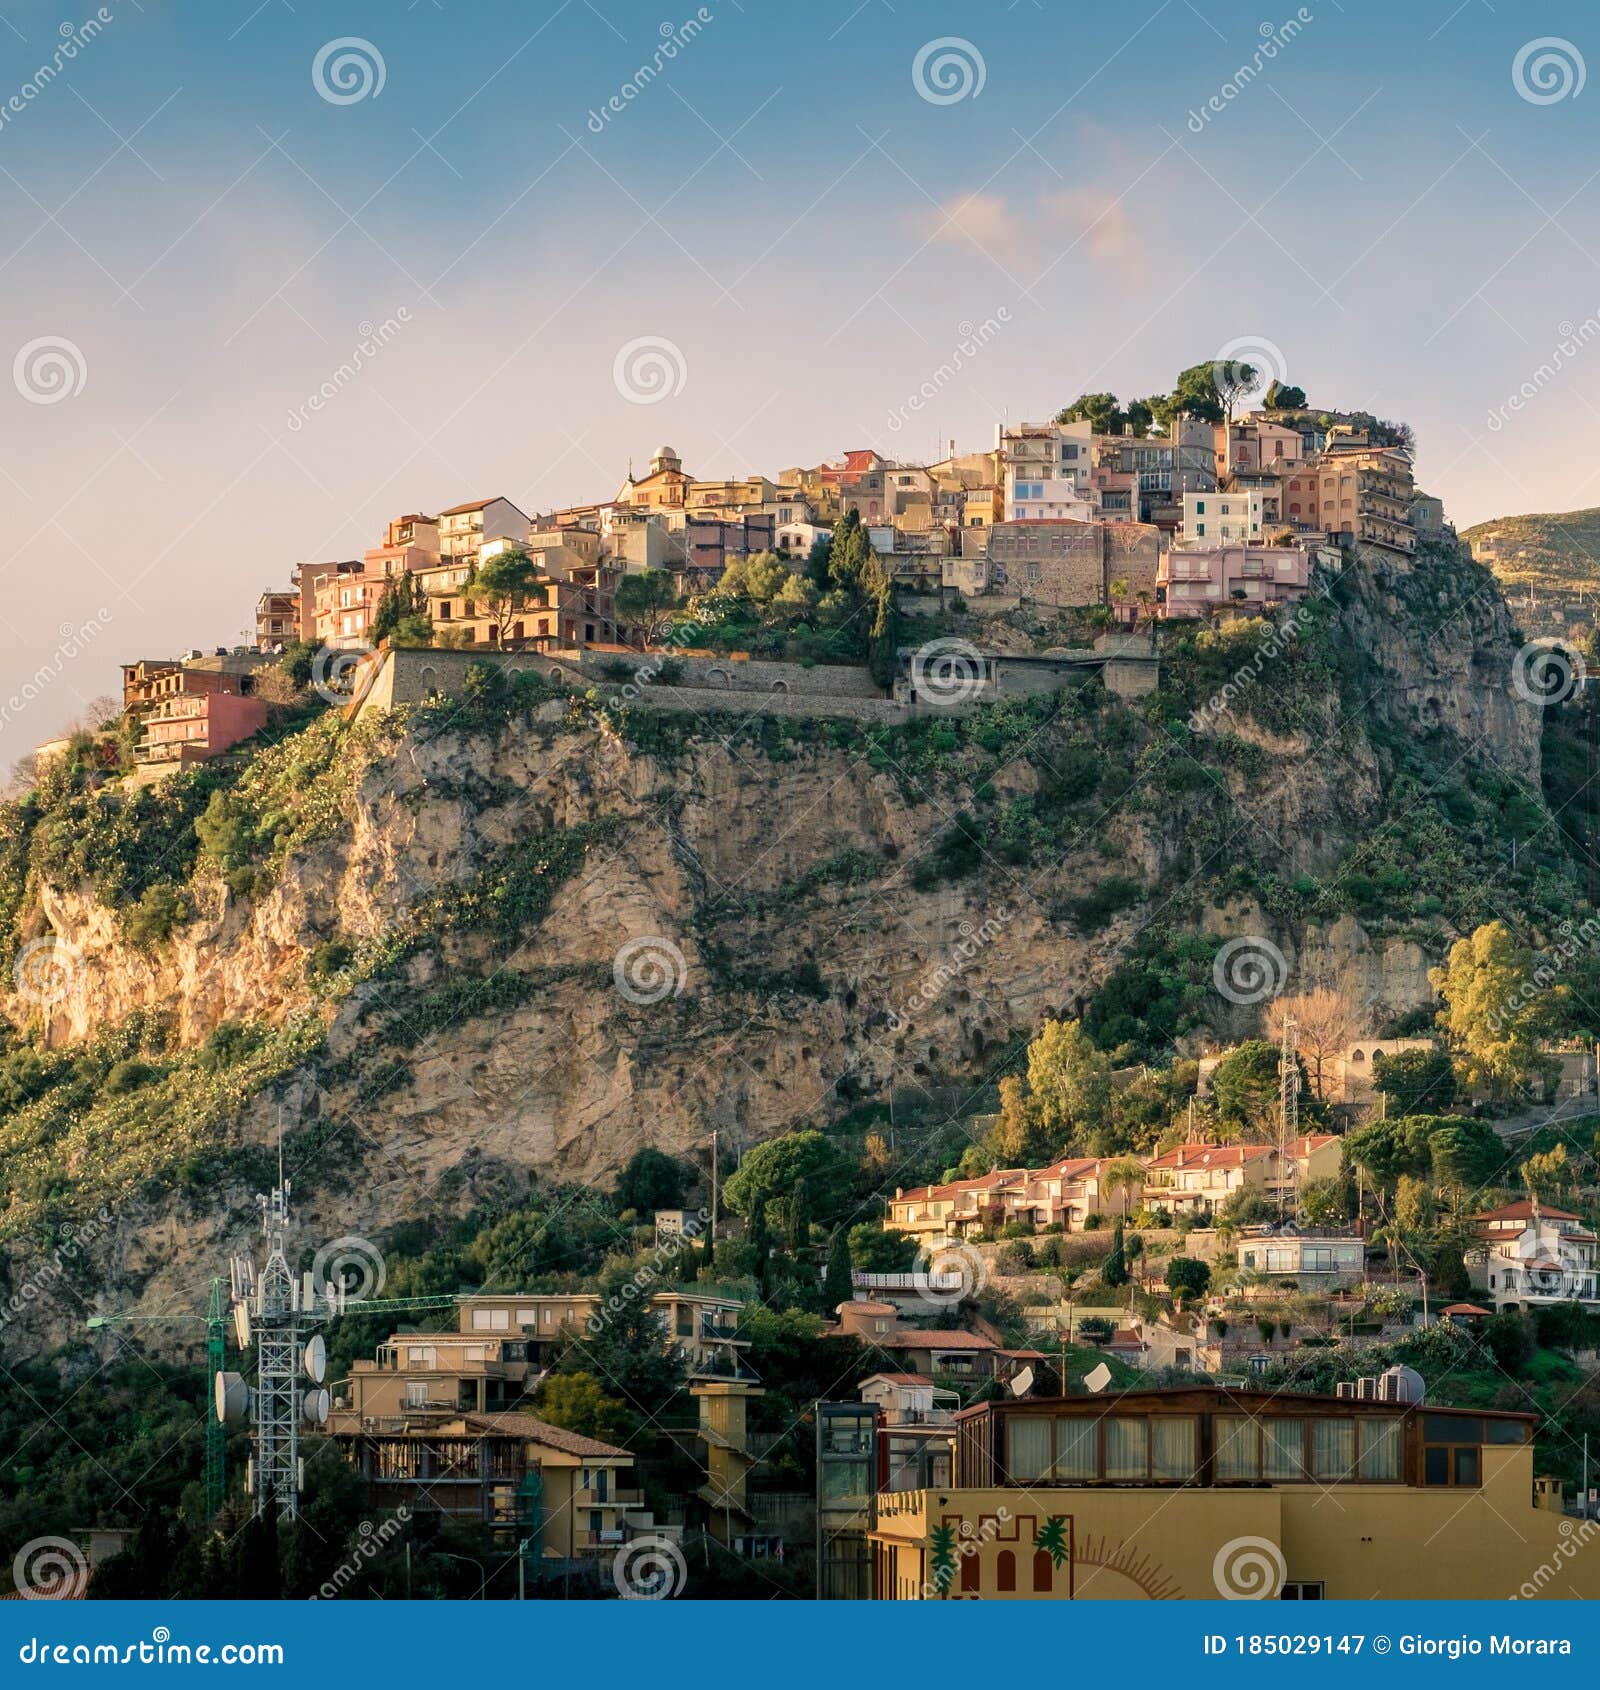 castelmola: typical sicilian village